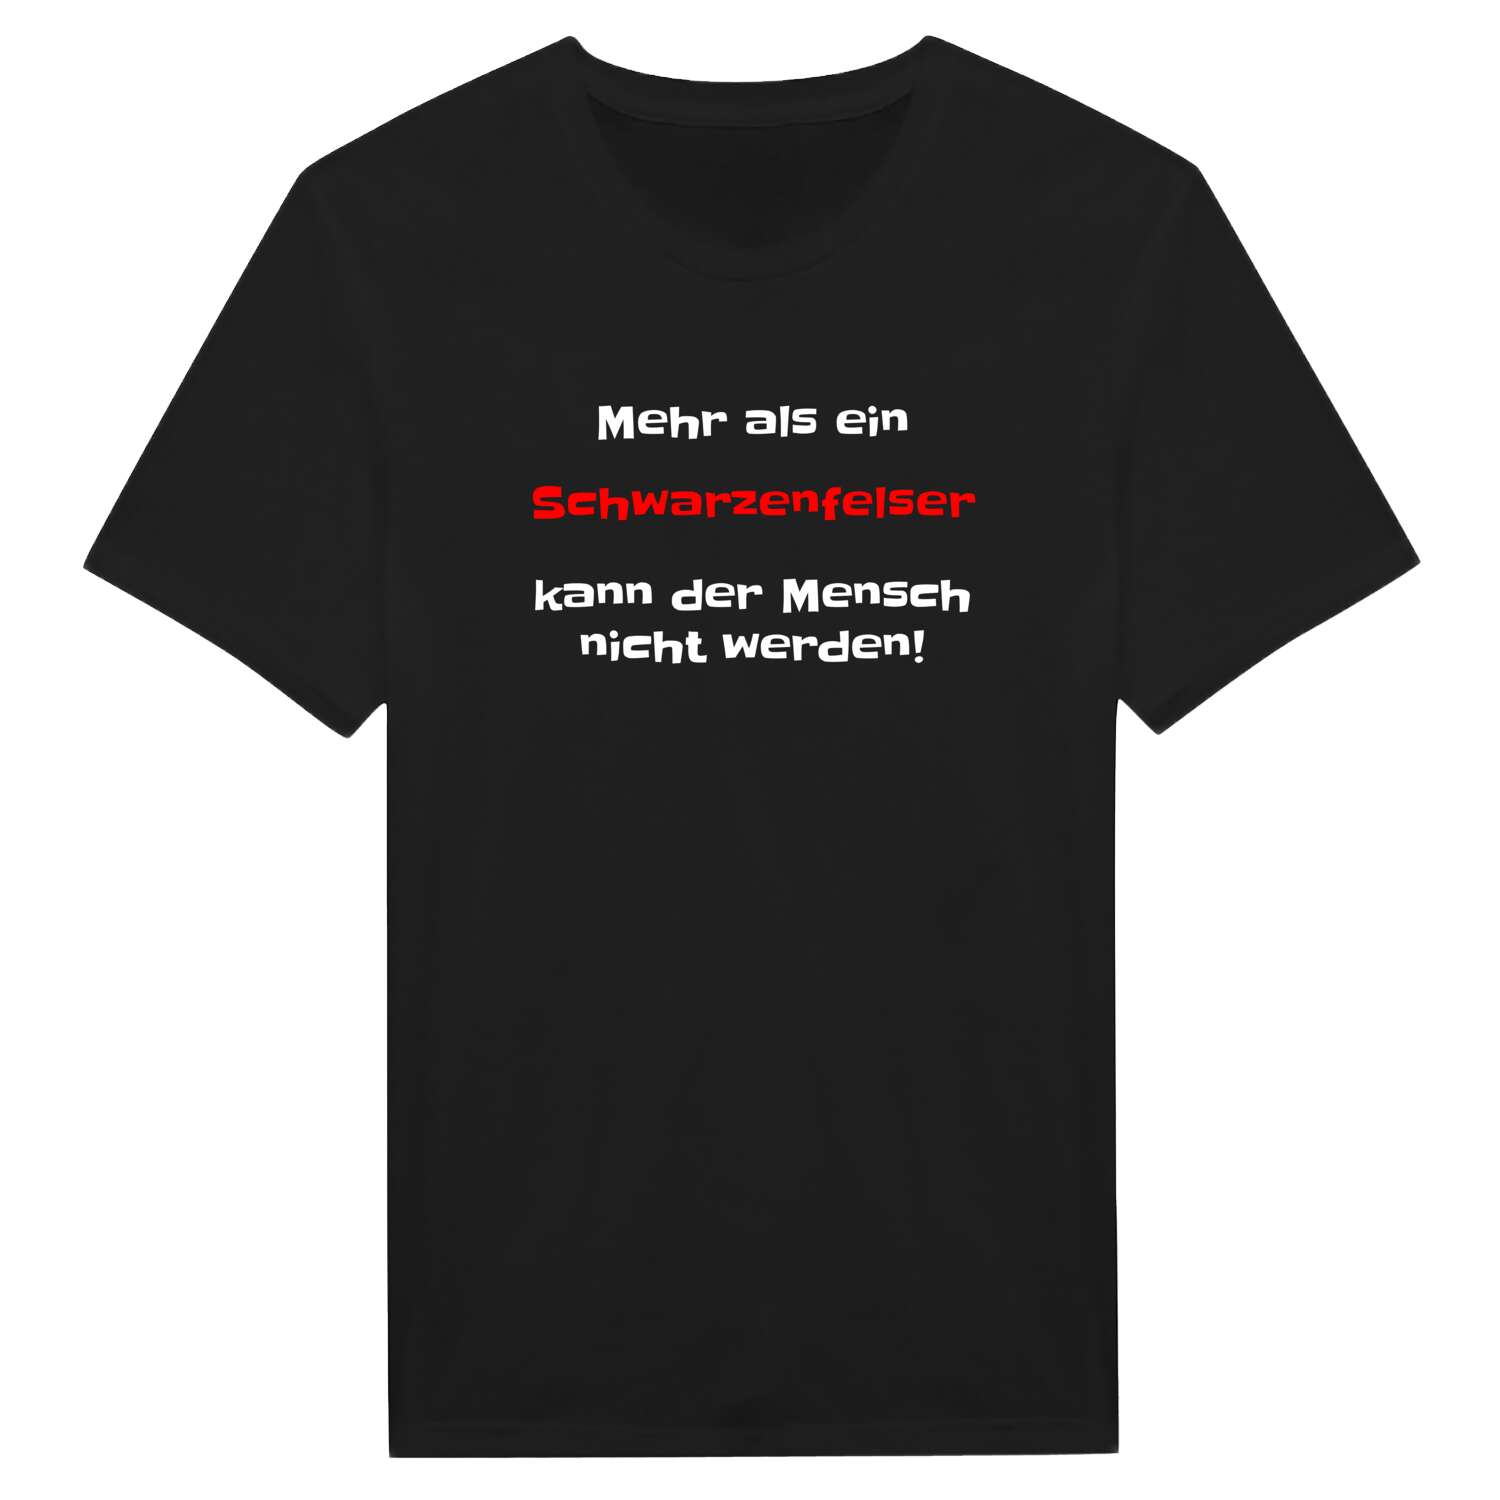 Schwarzenfels T-Shirt »Mehr als ein«